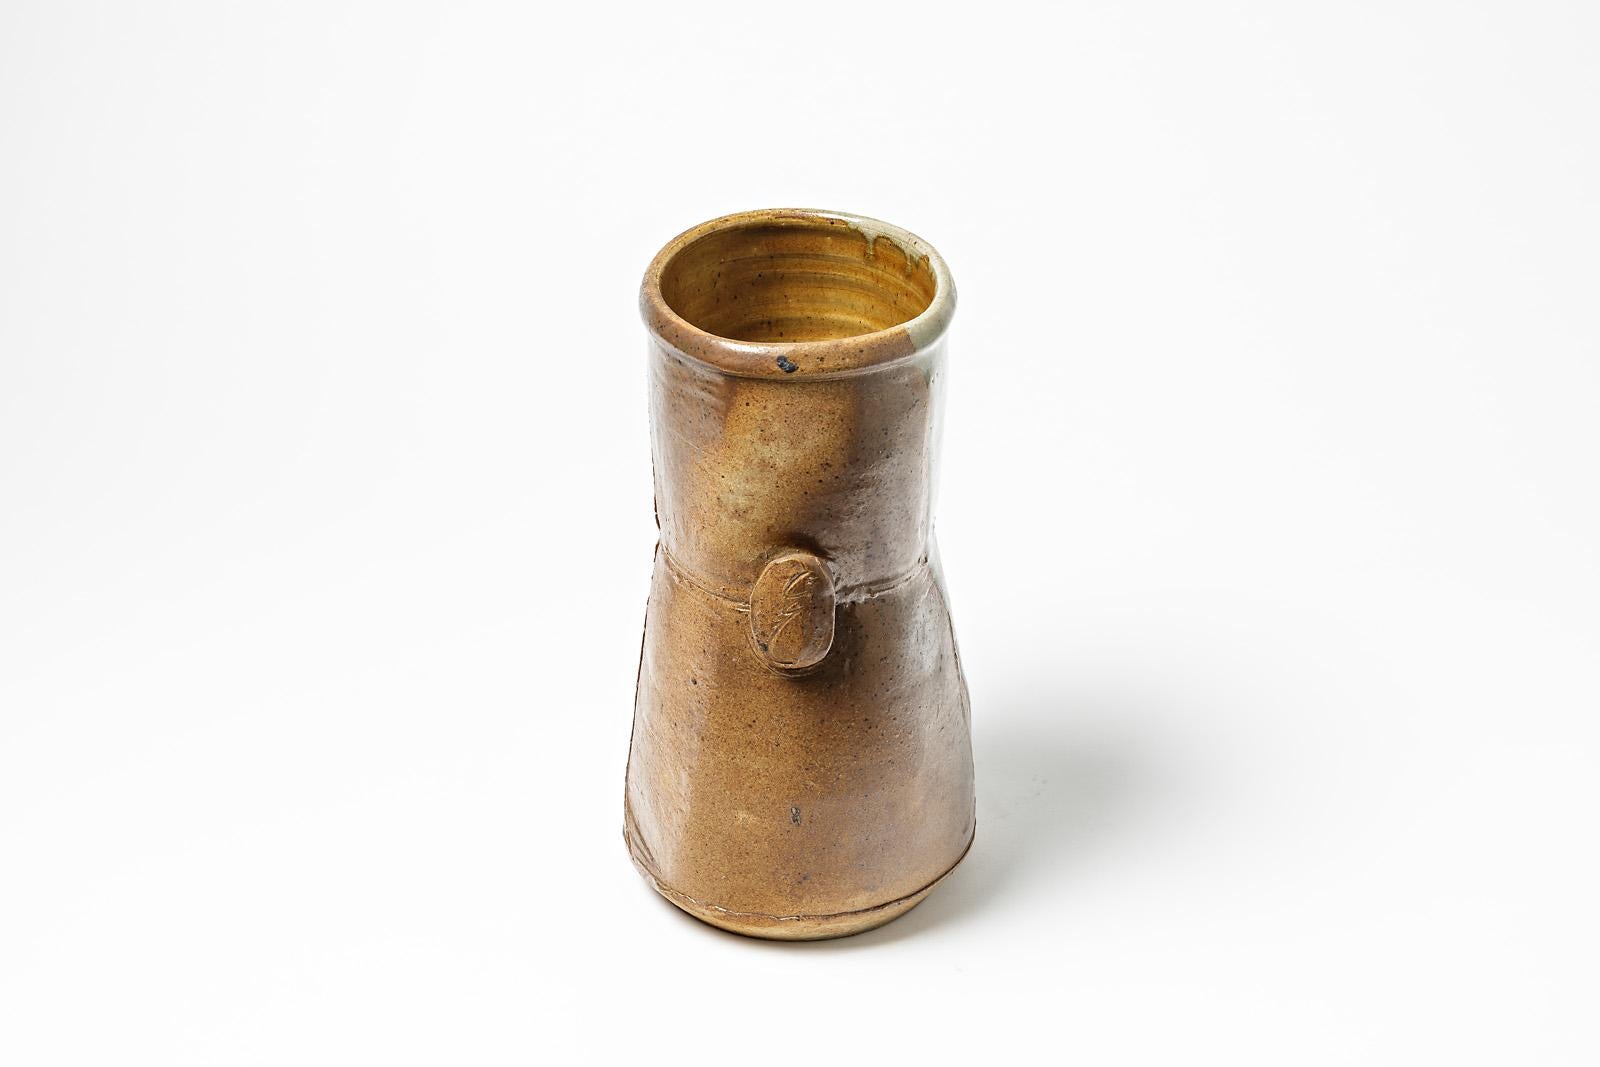 Modern Stoneware Ceramic Vase by Astoul in La Borne 1982 Shinny Grey Color For Sale 1